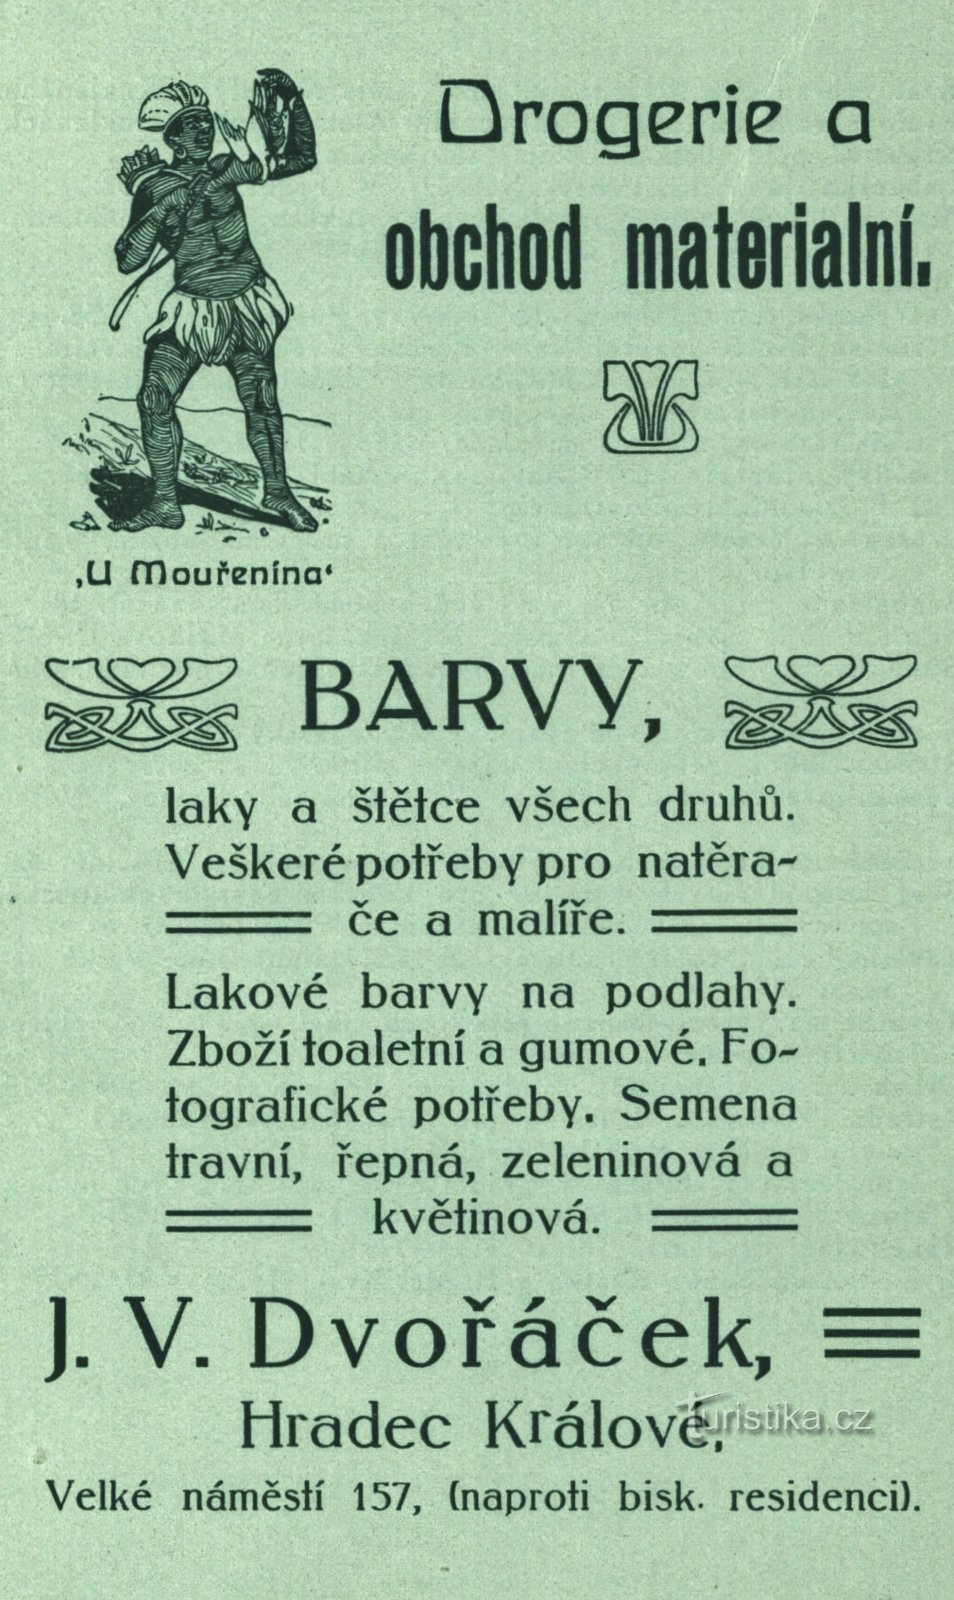 Διαφήμιση περιόδου του φαρμακείου του Dvořáček από το 1896